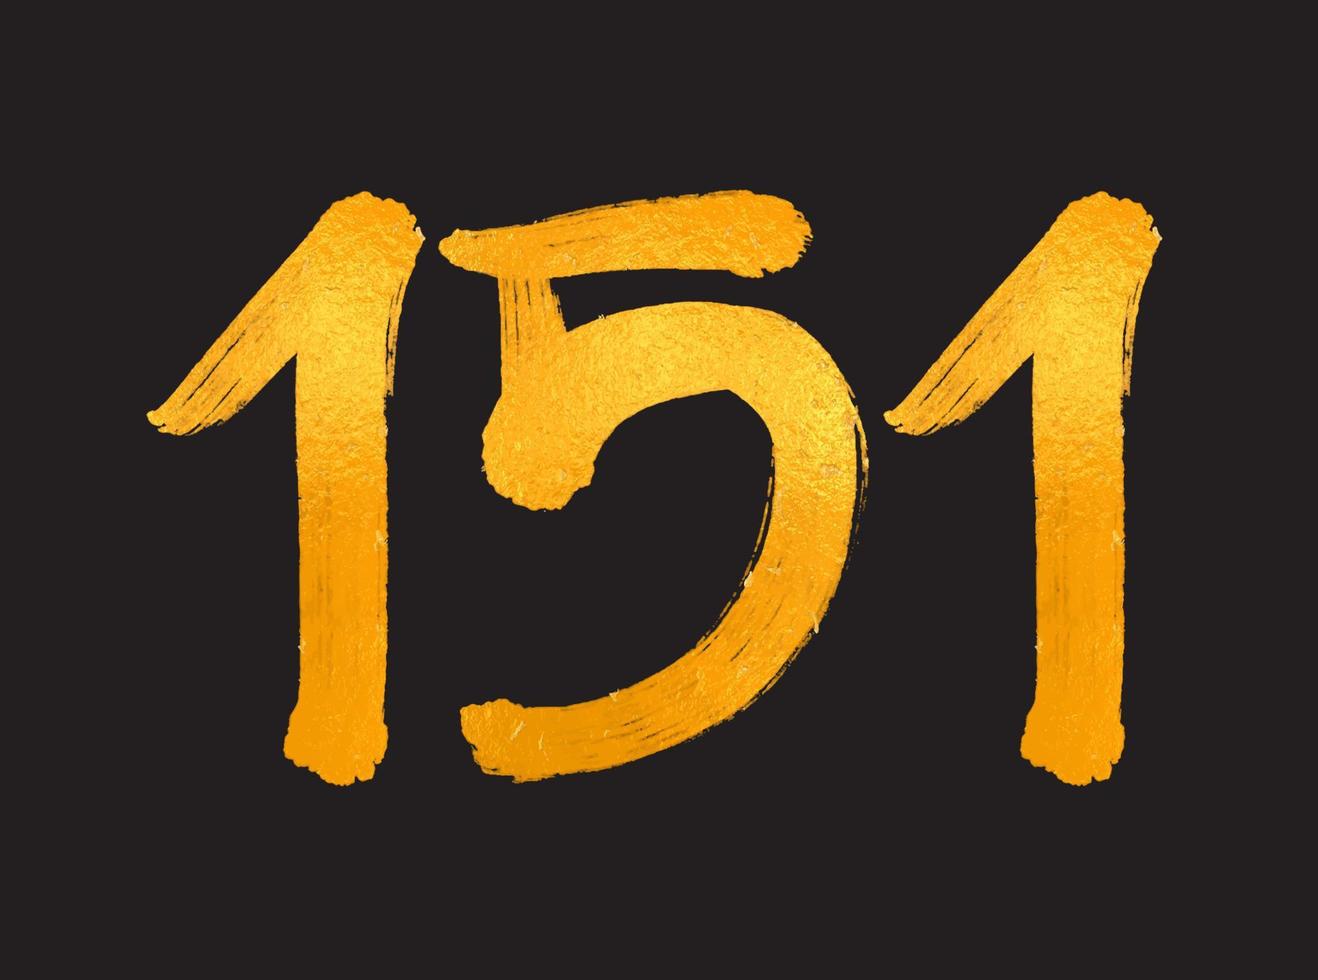 151 siffra logotyp vektor illustration, 151 år årsdag firande vektor mall, 151:a födelsedag, guld text tal borsta teckning hand dragen skiss, siffra logotyp design för skriva ut, t skjorta